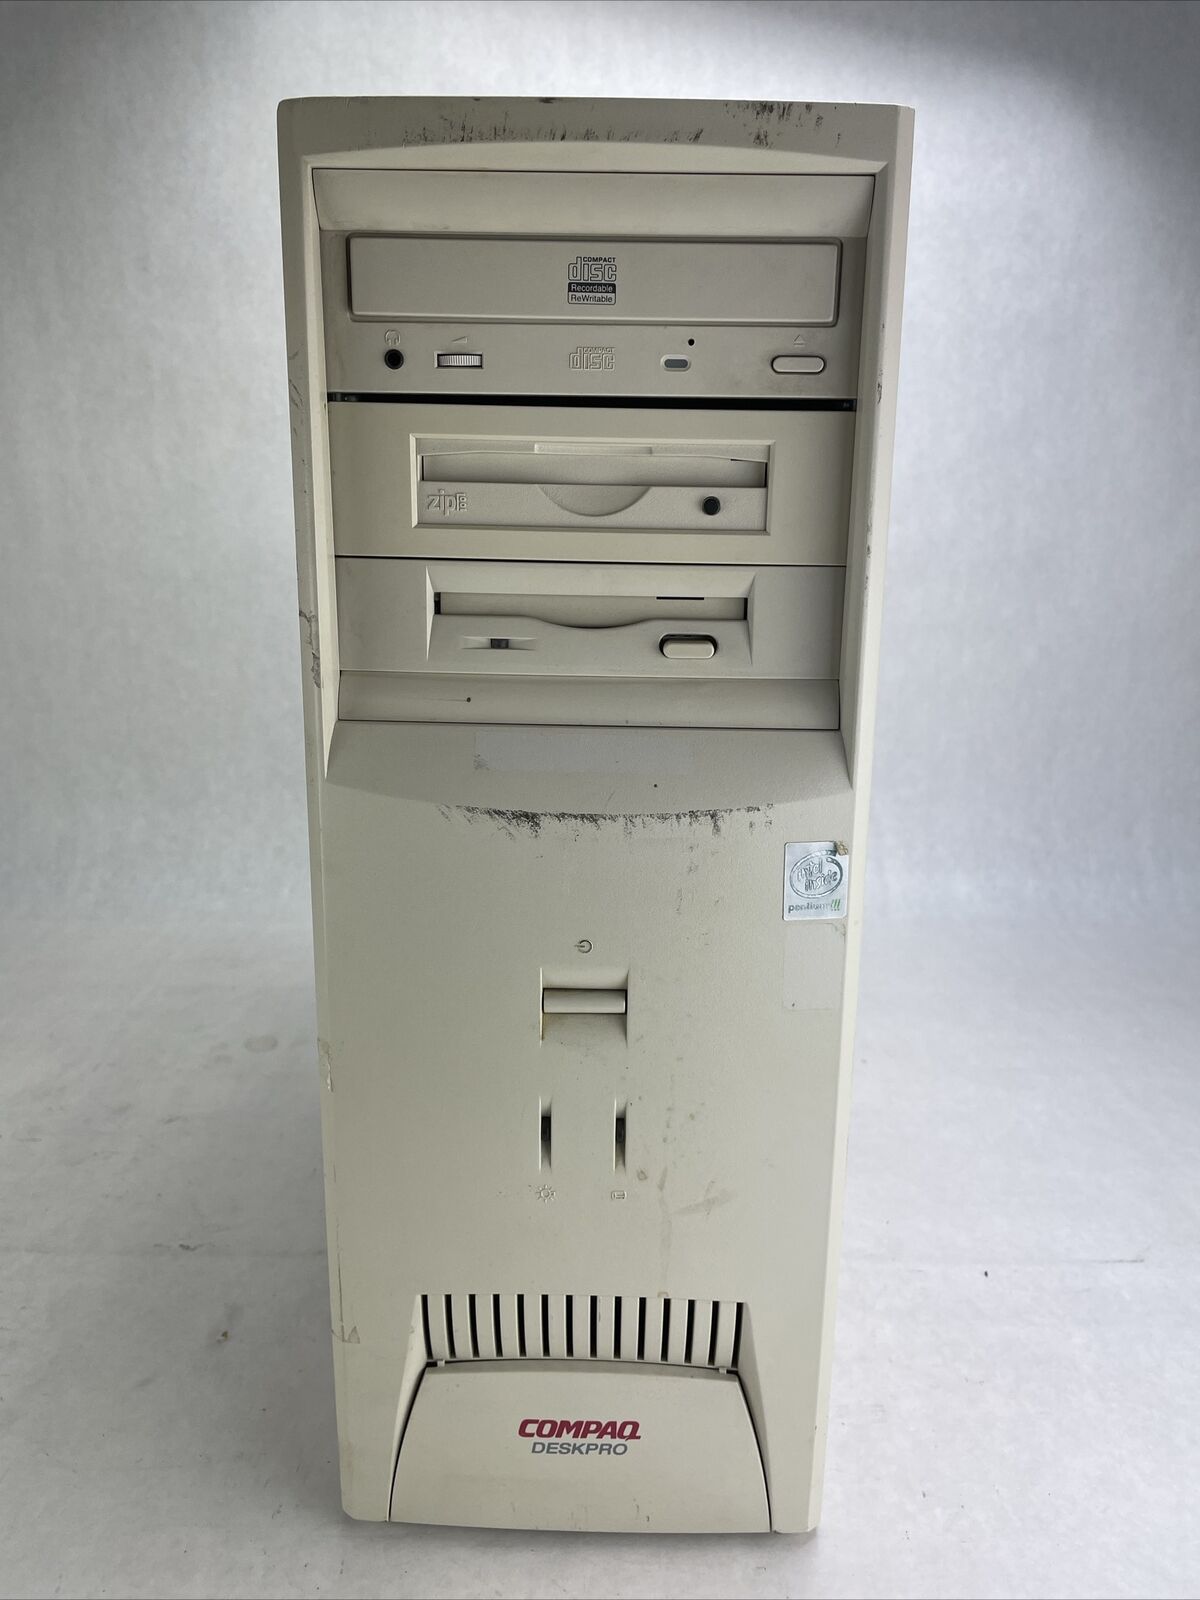 Compaq Deskpro P600E DT Intel Pentium III 600MHz 256MB RAM No HDD No OS